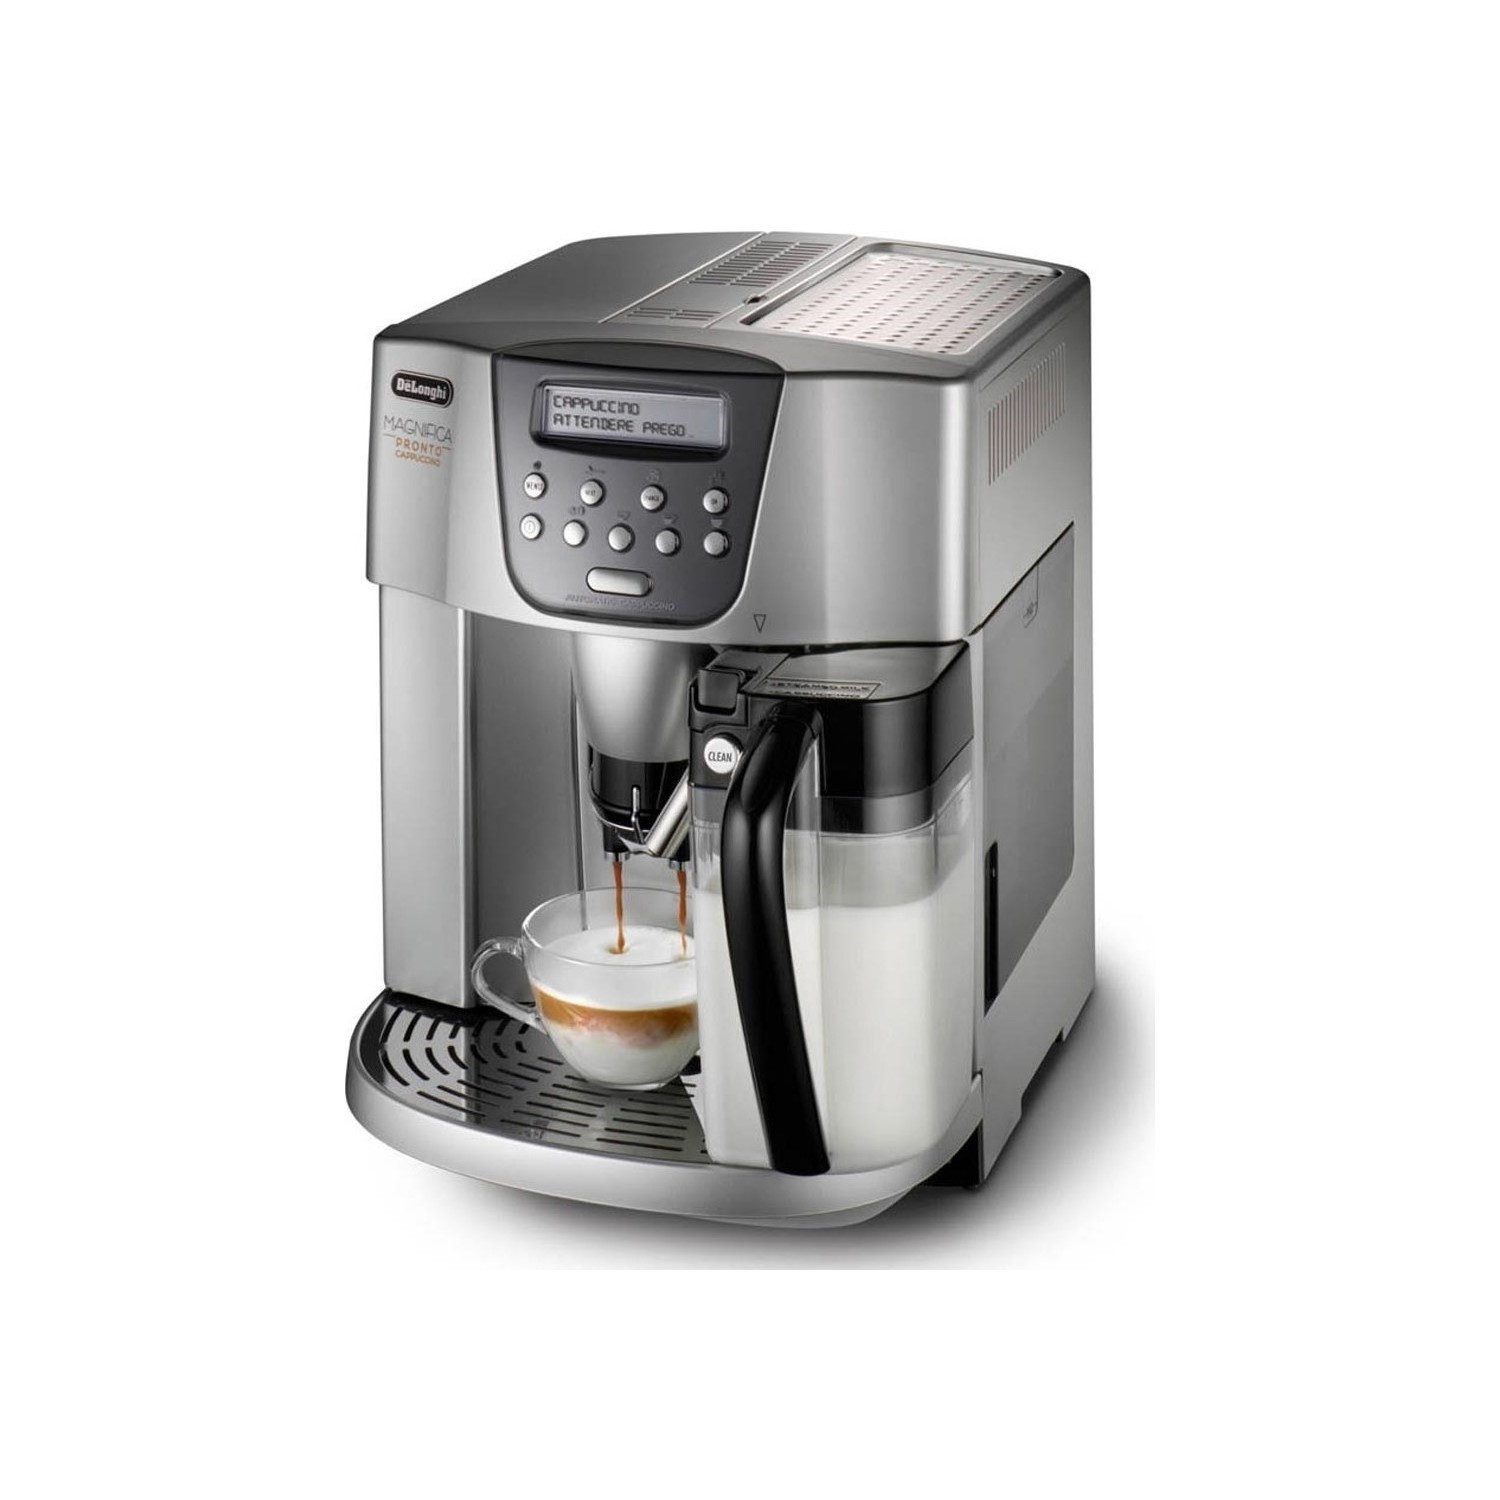 Espresso & Cappuccino Makinesi | Delonghi Esam 4500 Magnifica Kahve Makinesi | ESAM4500 | Delonghi Esam 4500 Magnifica Kahve Makinası, Delonghi Esam4500, Delonghi Esam 4500 espresso, cappucino, delonghi kahve makinesi, esam 4500, esam4500 | 